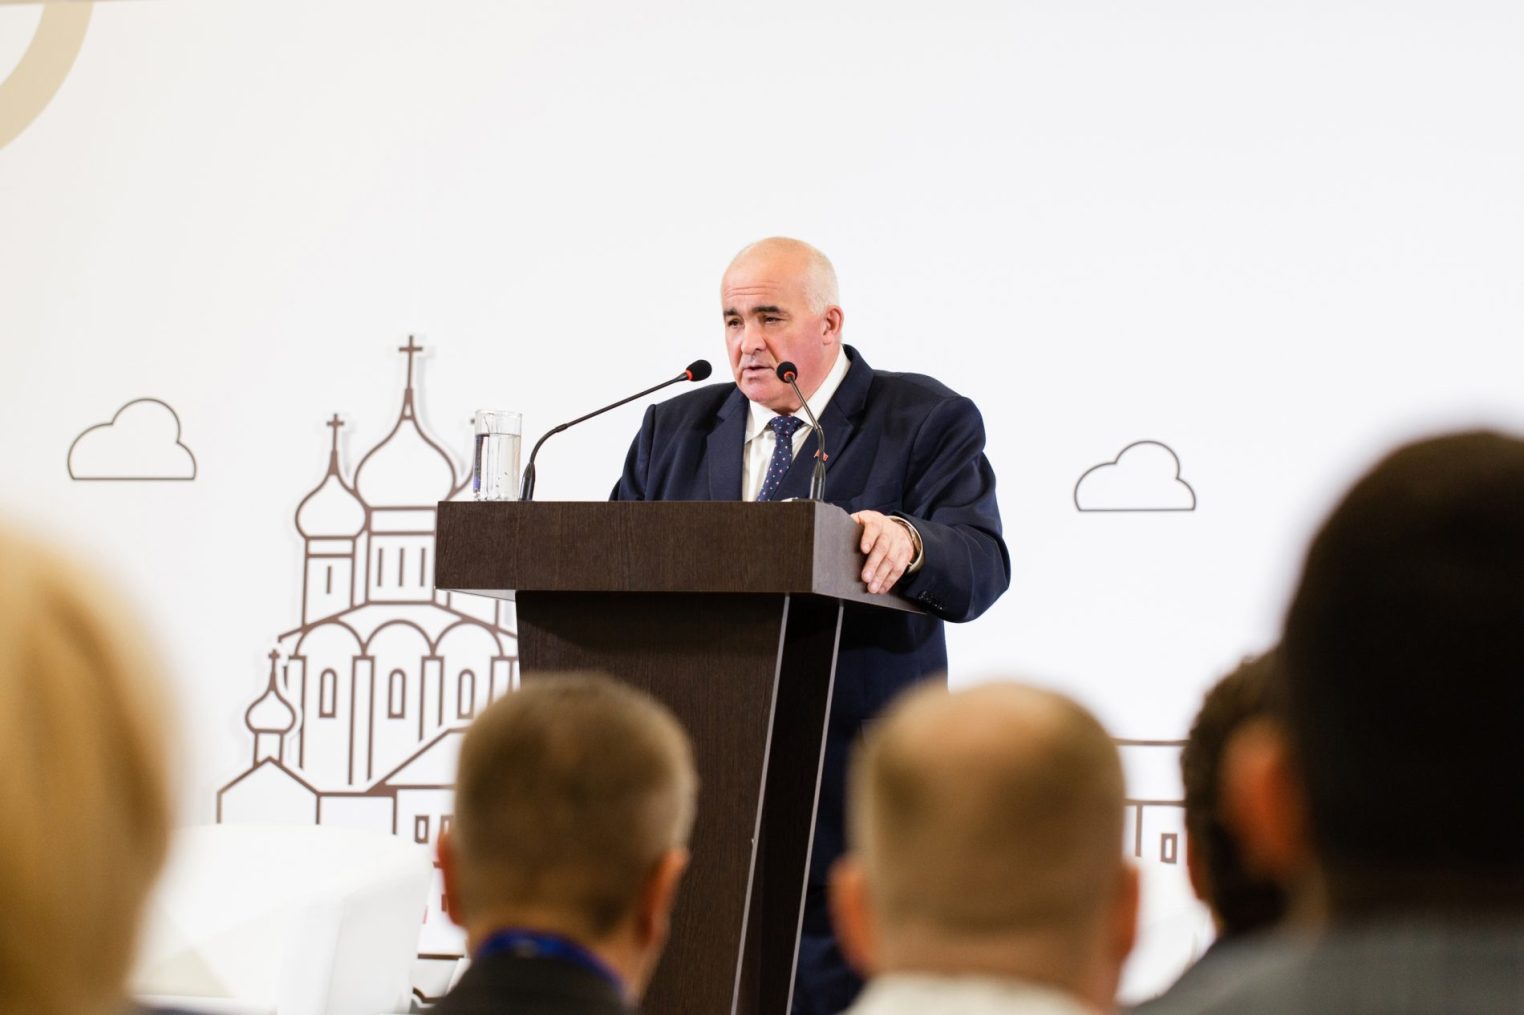 Костромской экономический форум пройдет в регионе в десятый раз